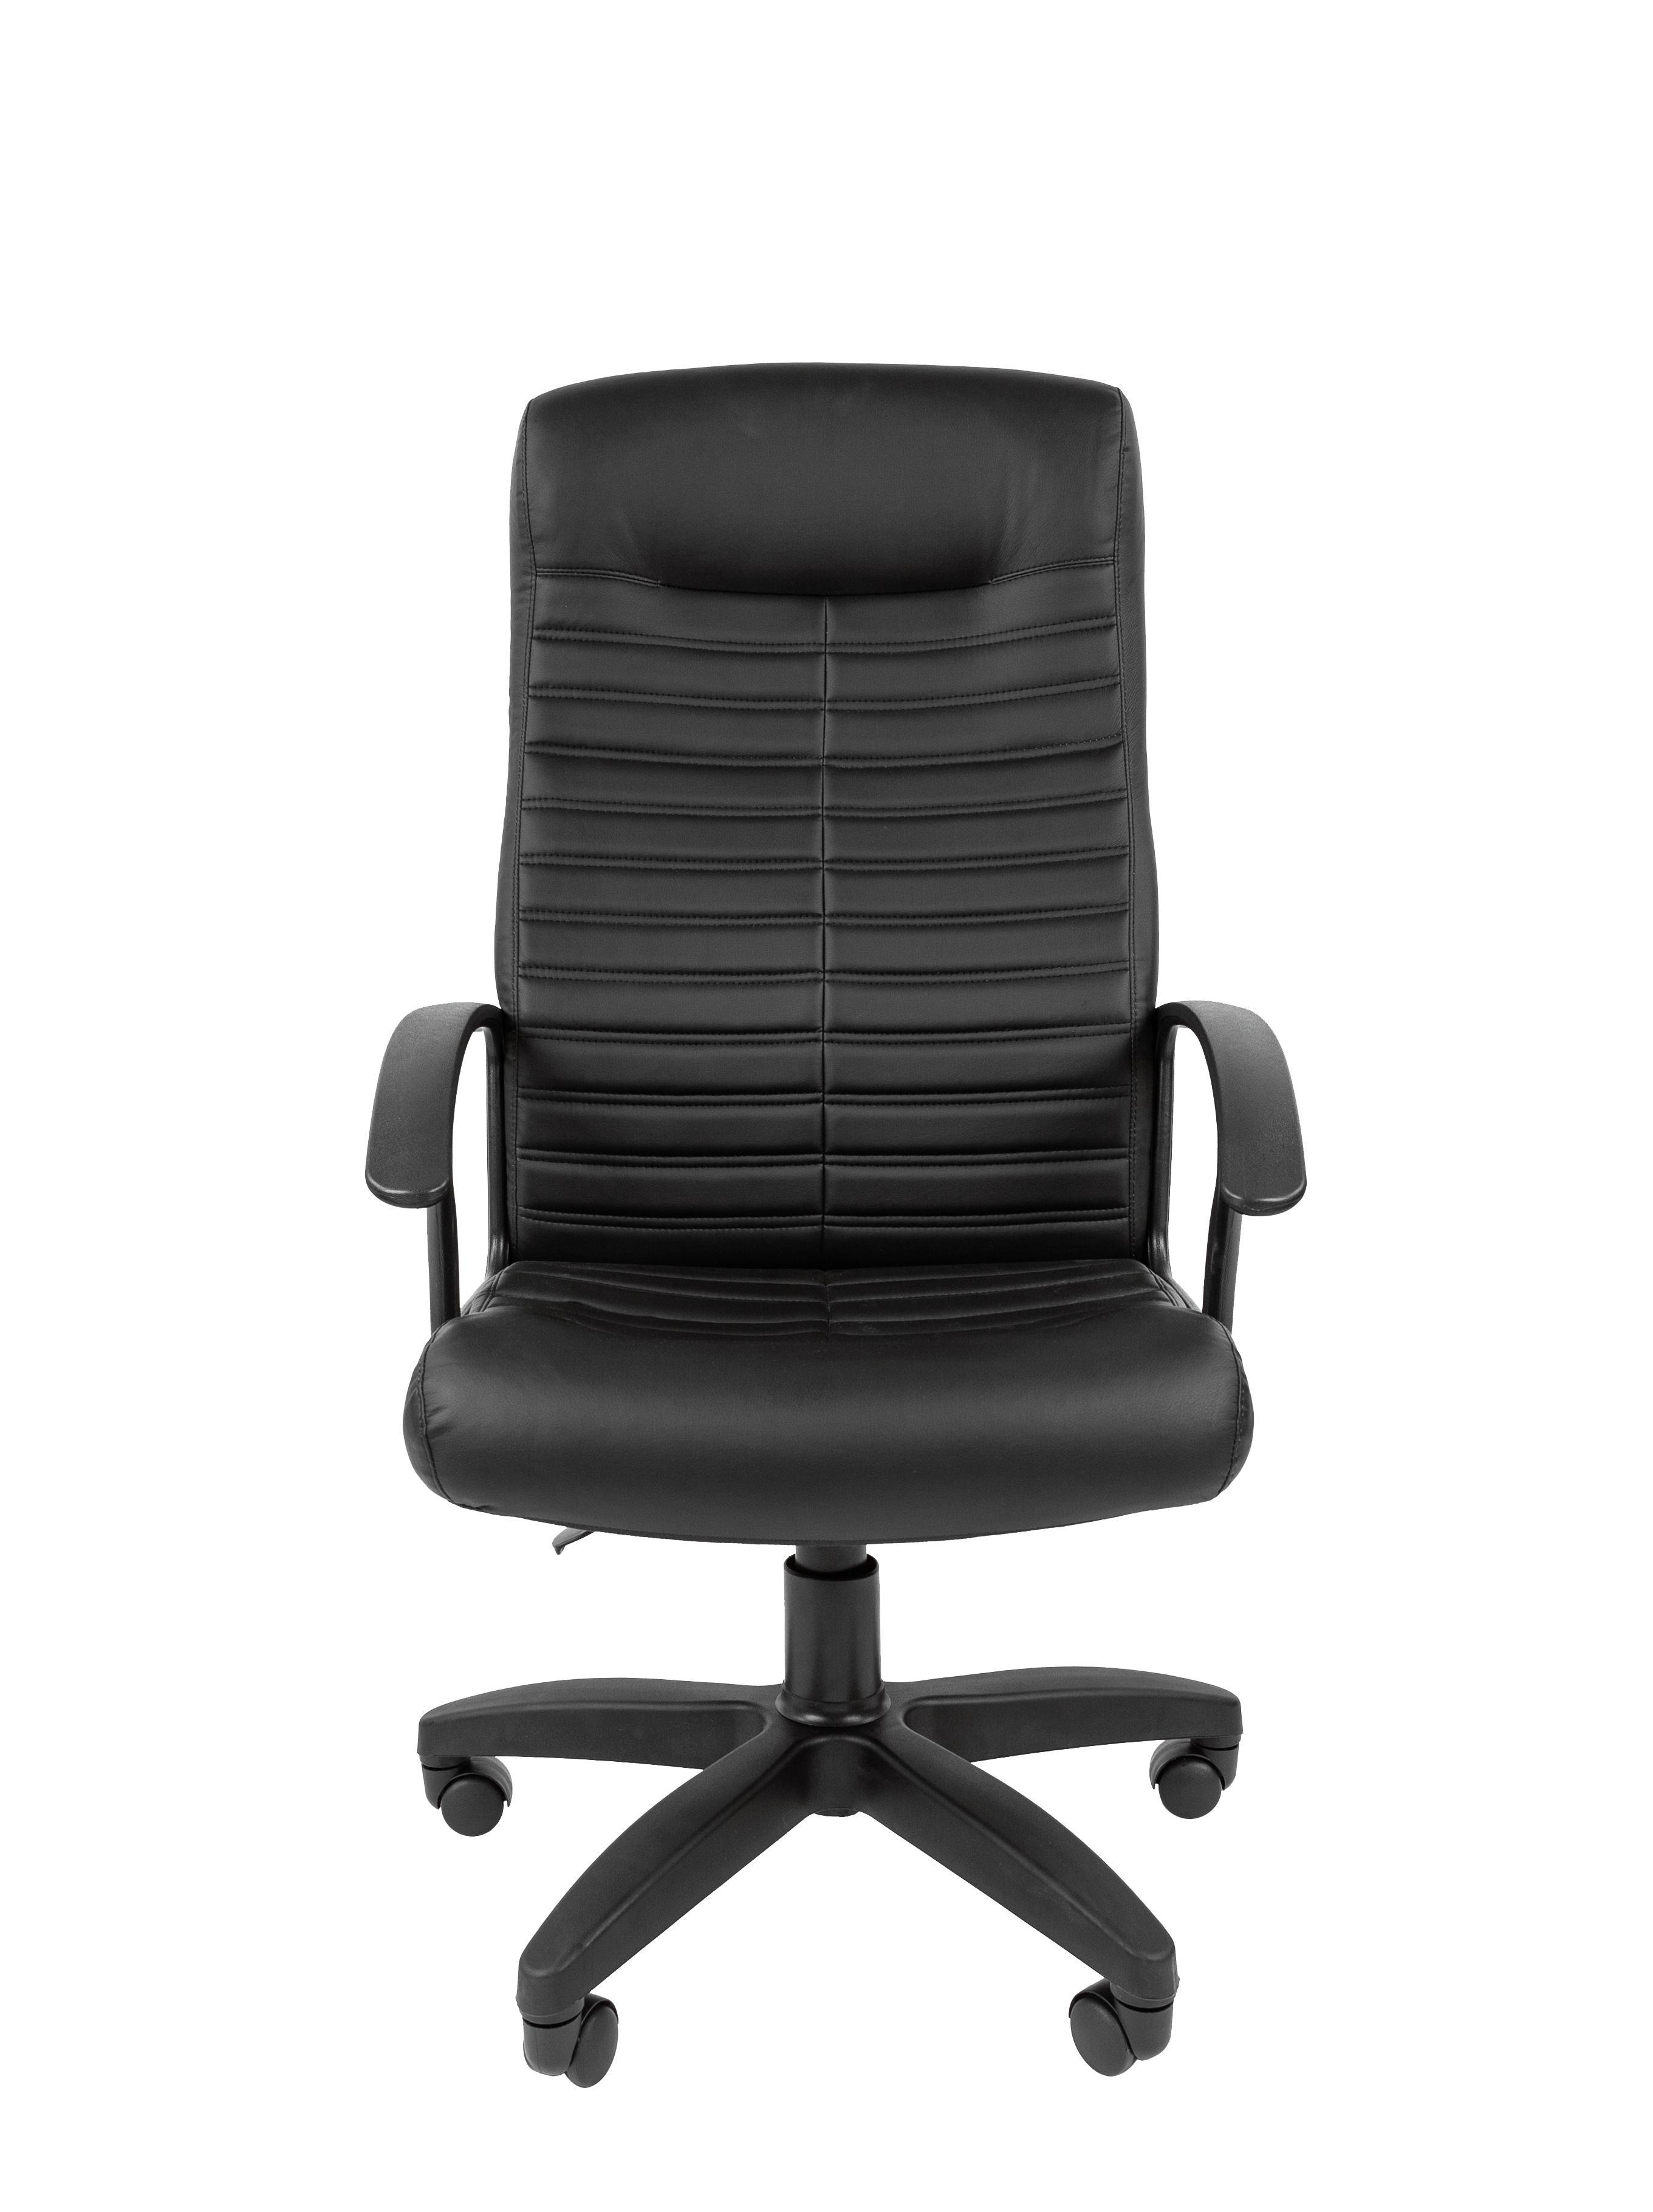 90054351 Компьютерное кресло СТ-80 с высокой спинкой экокожа черн. STLM-0095917 СТАНДАРТ